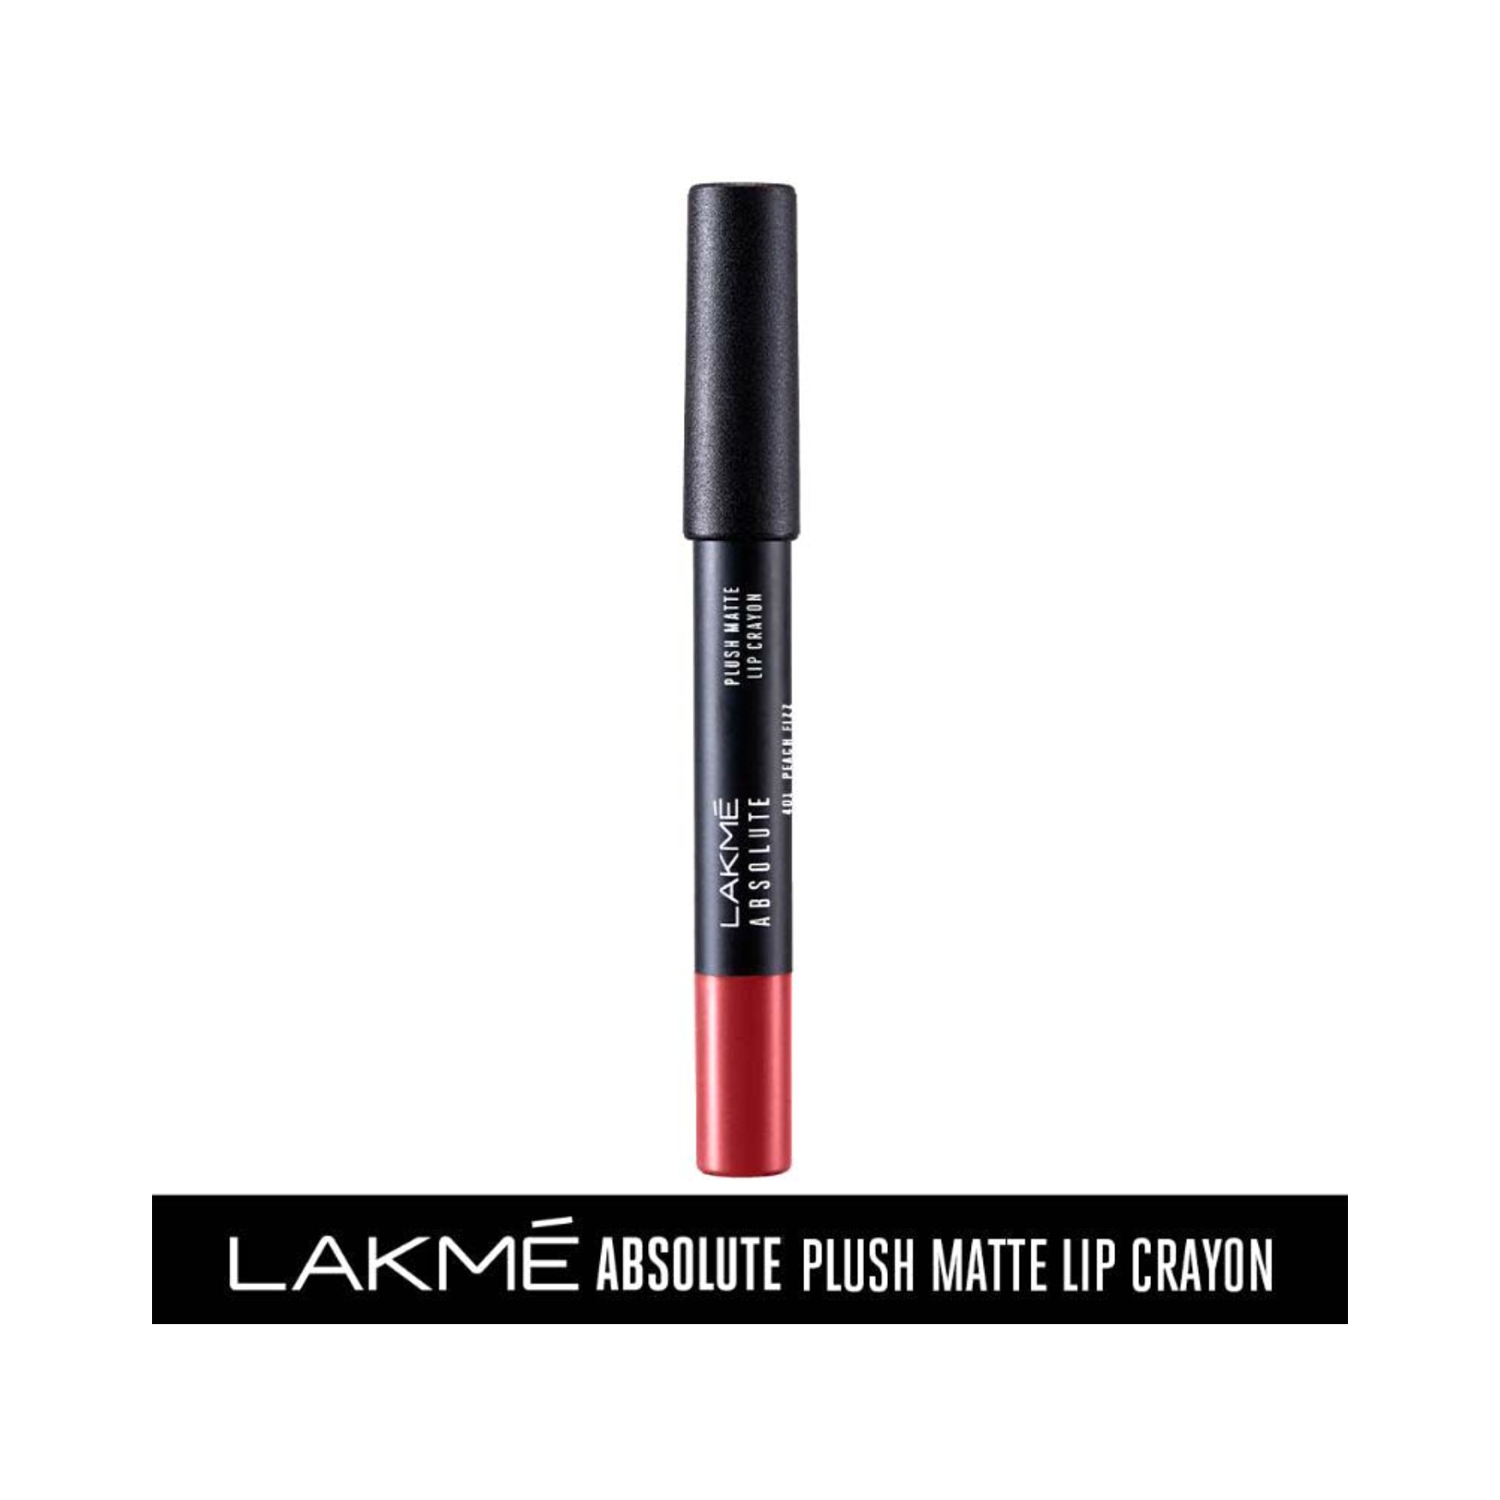 Lakme | Lakme Absolute Plush Matte Lip Crayon - 401 Peach Fizz (2.8g)